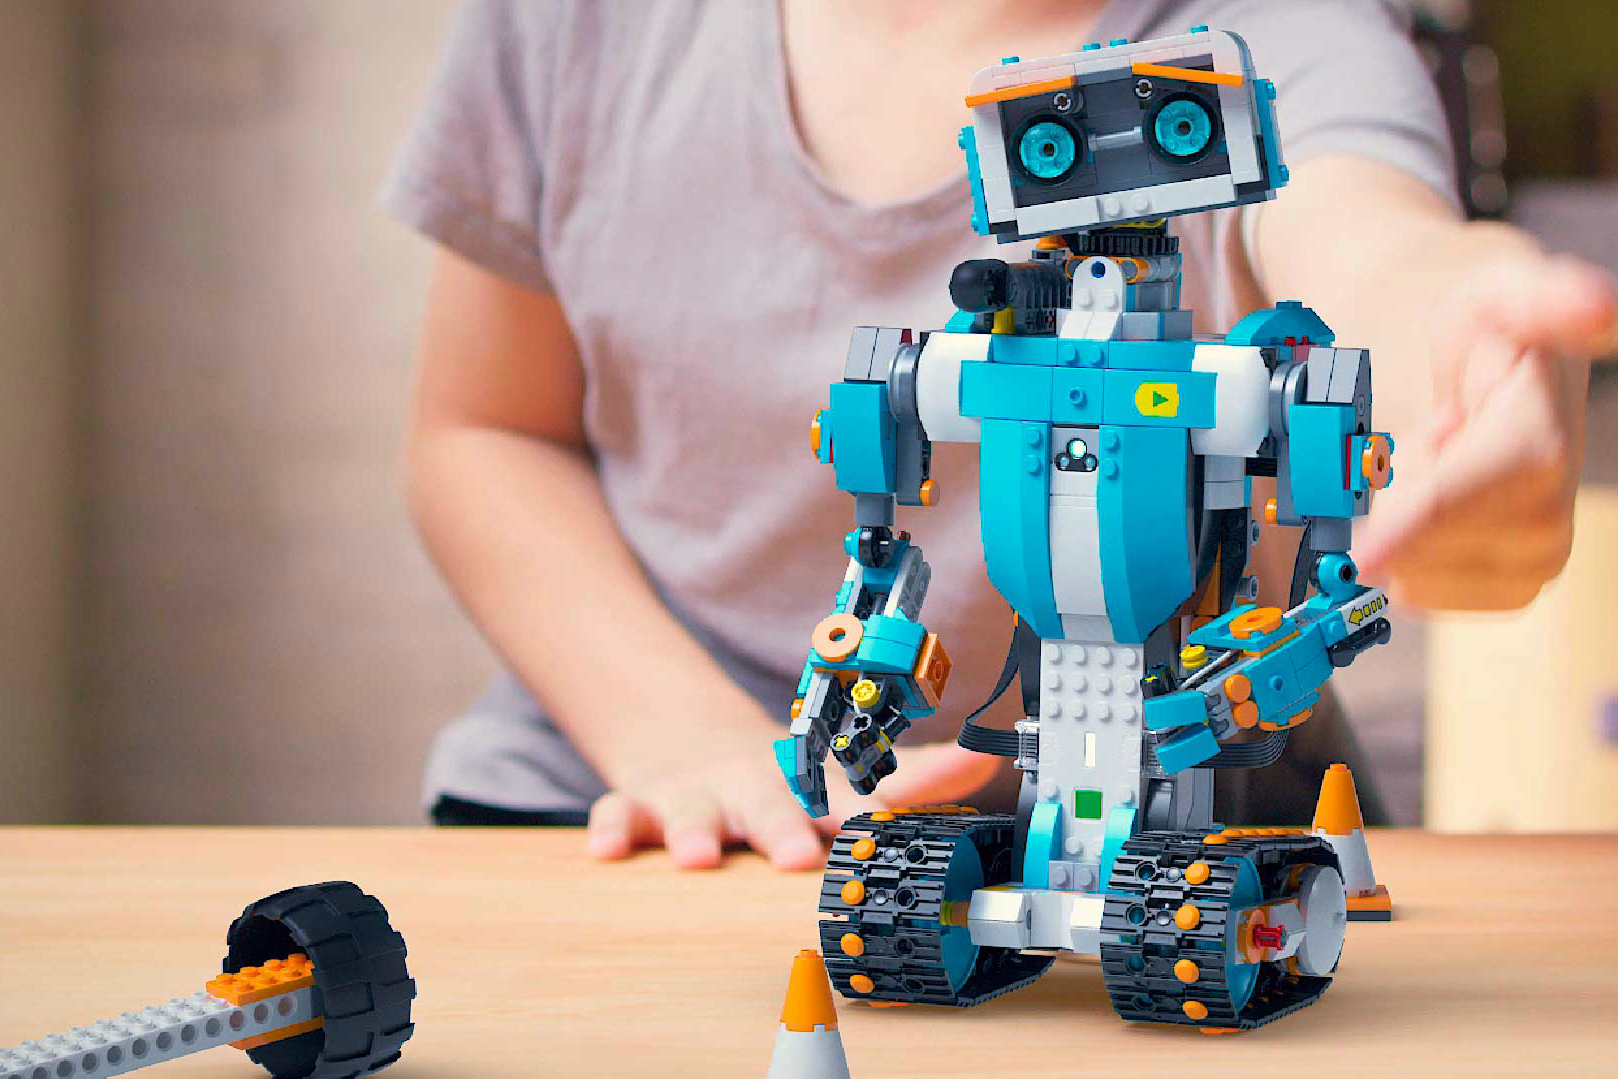 Best Robot Kits for Kids | Digital Trends